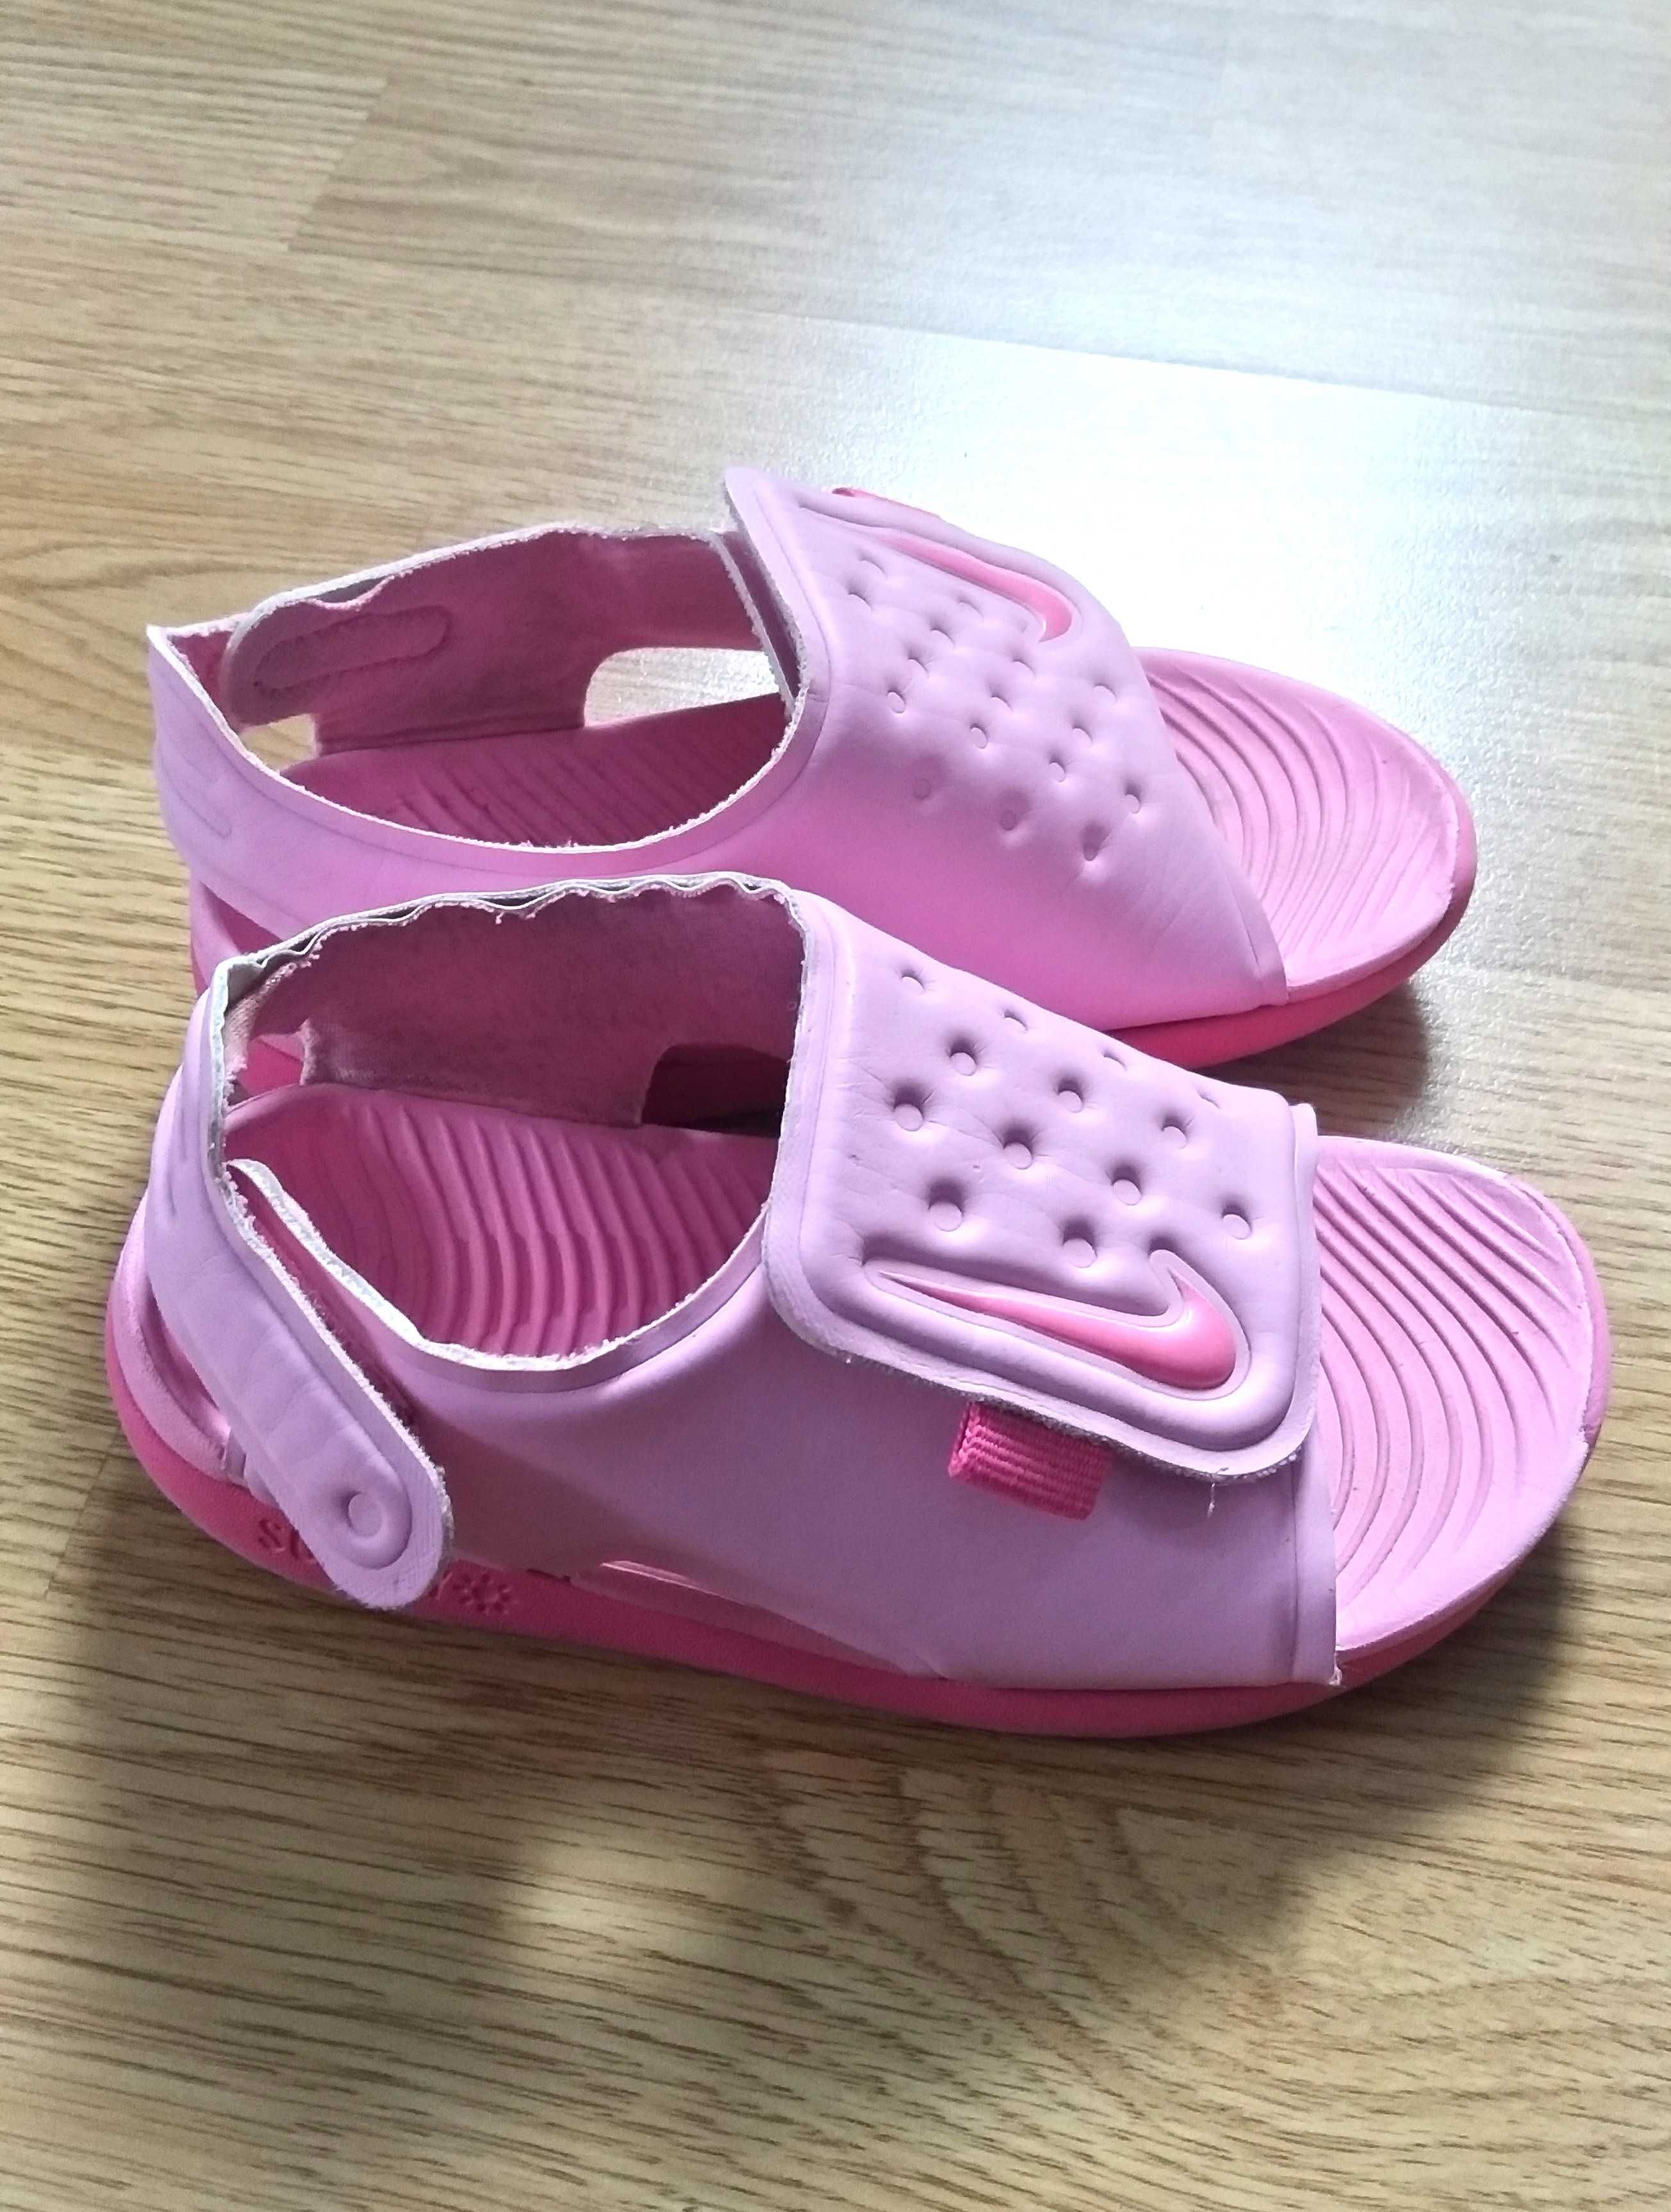 Buty Nike 25 klapki różowe basen piankowe